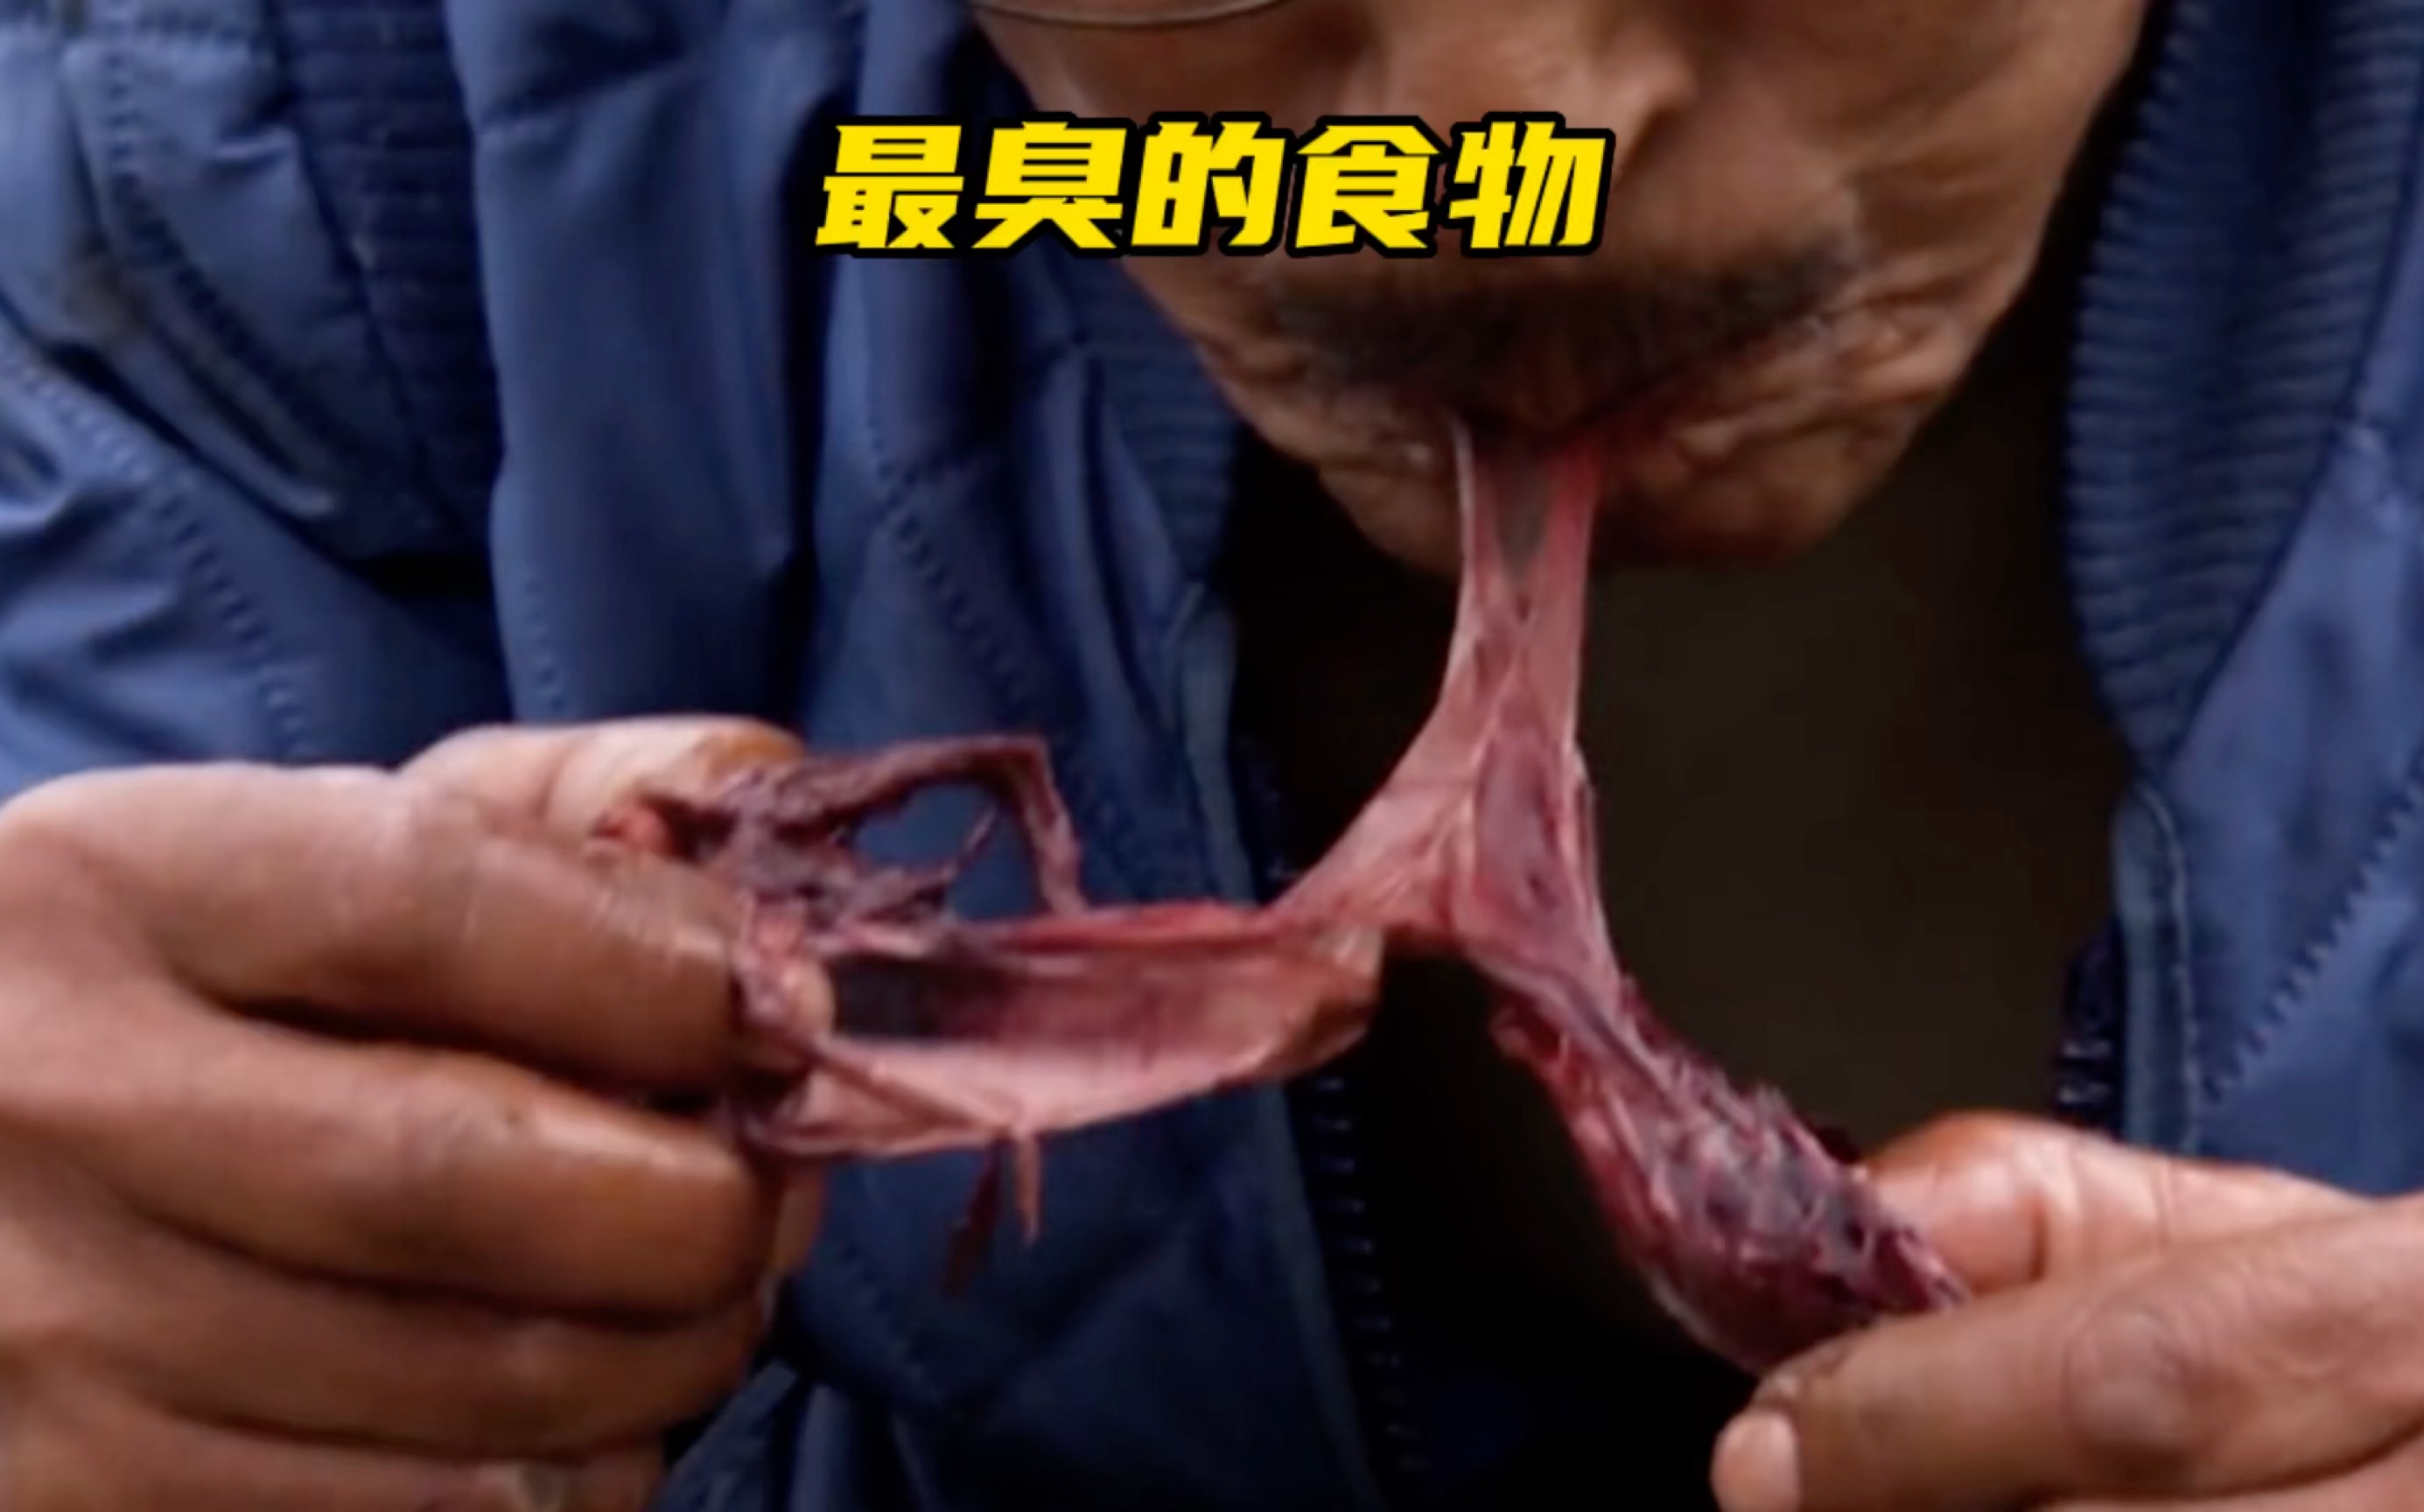 世界上最臭的食物，腌海雀，只需一口让人直穿天灵盖